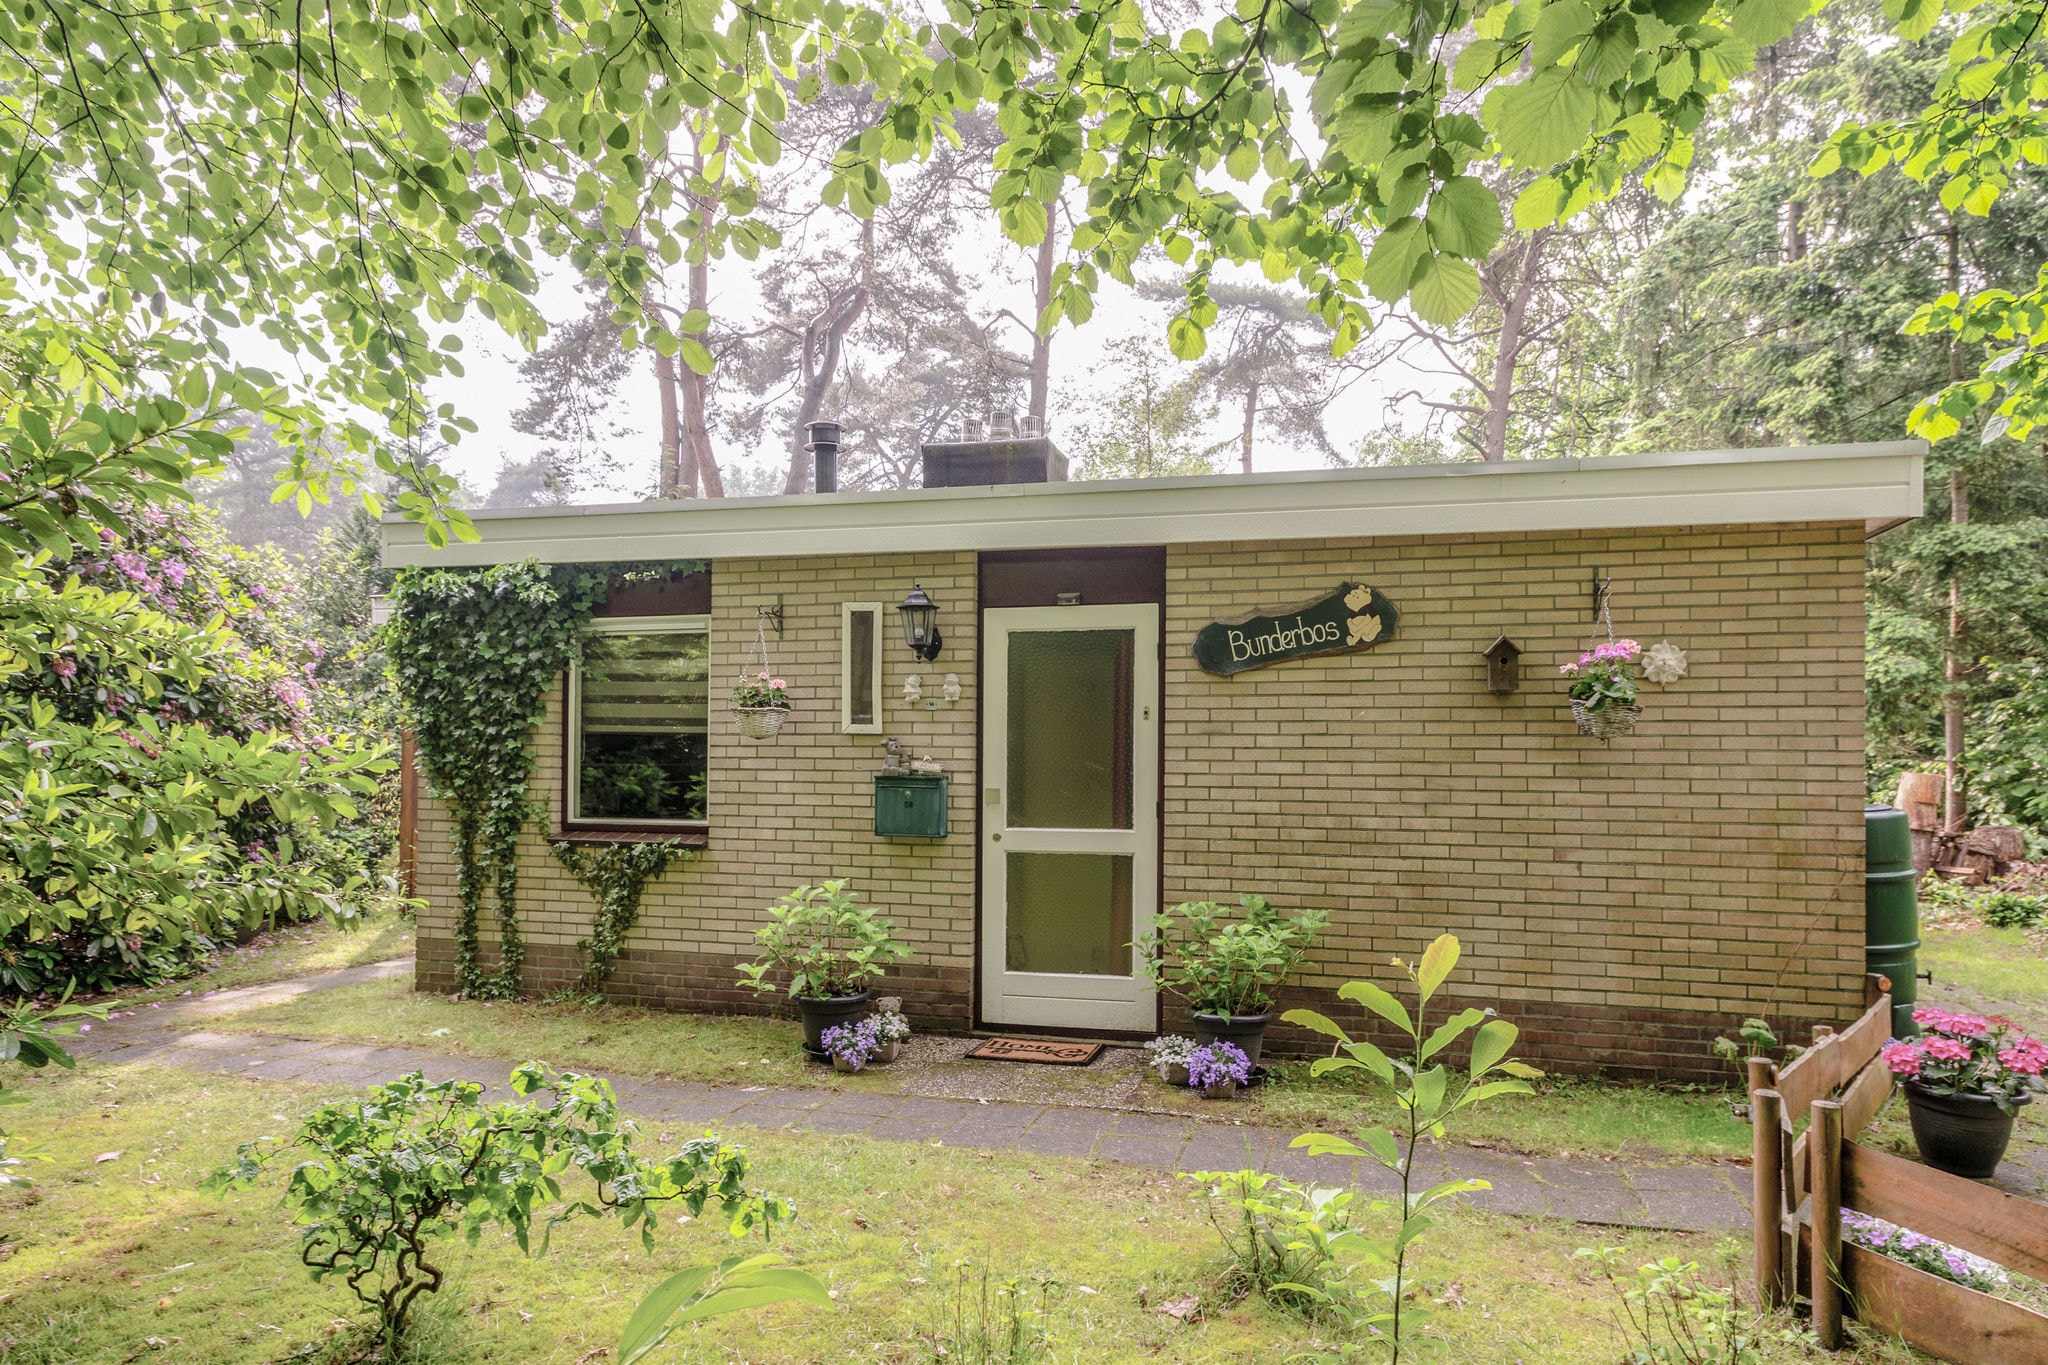 Maison de vacances meublée à Overijssel près de la forêt